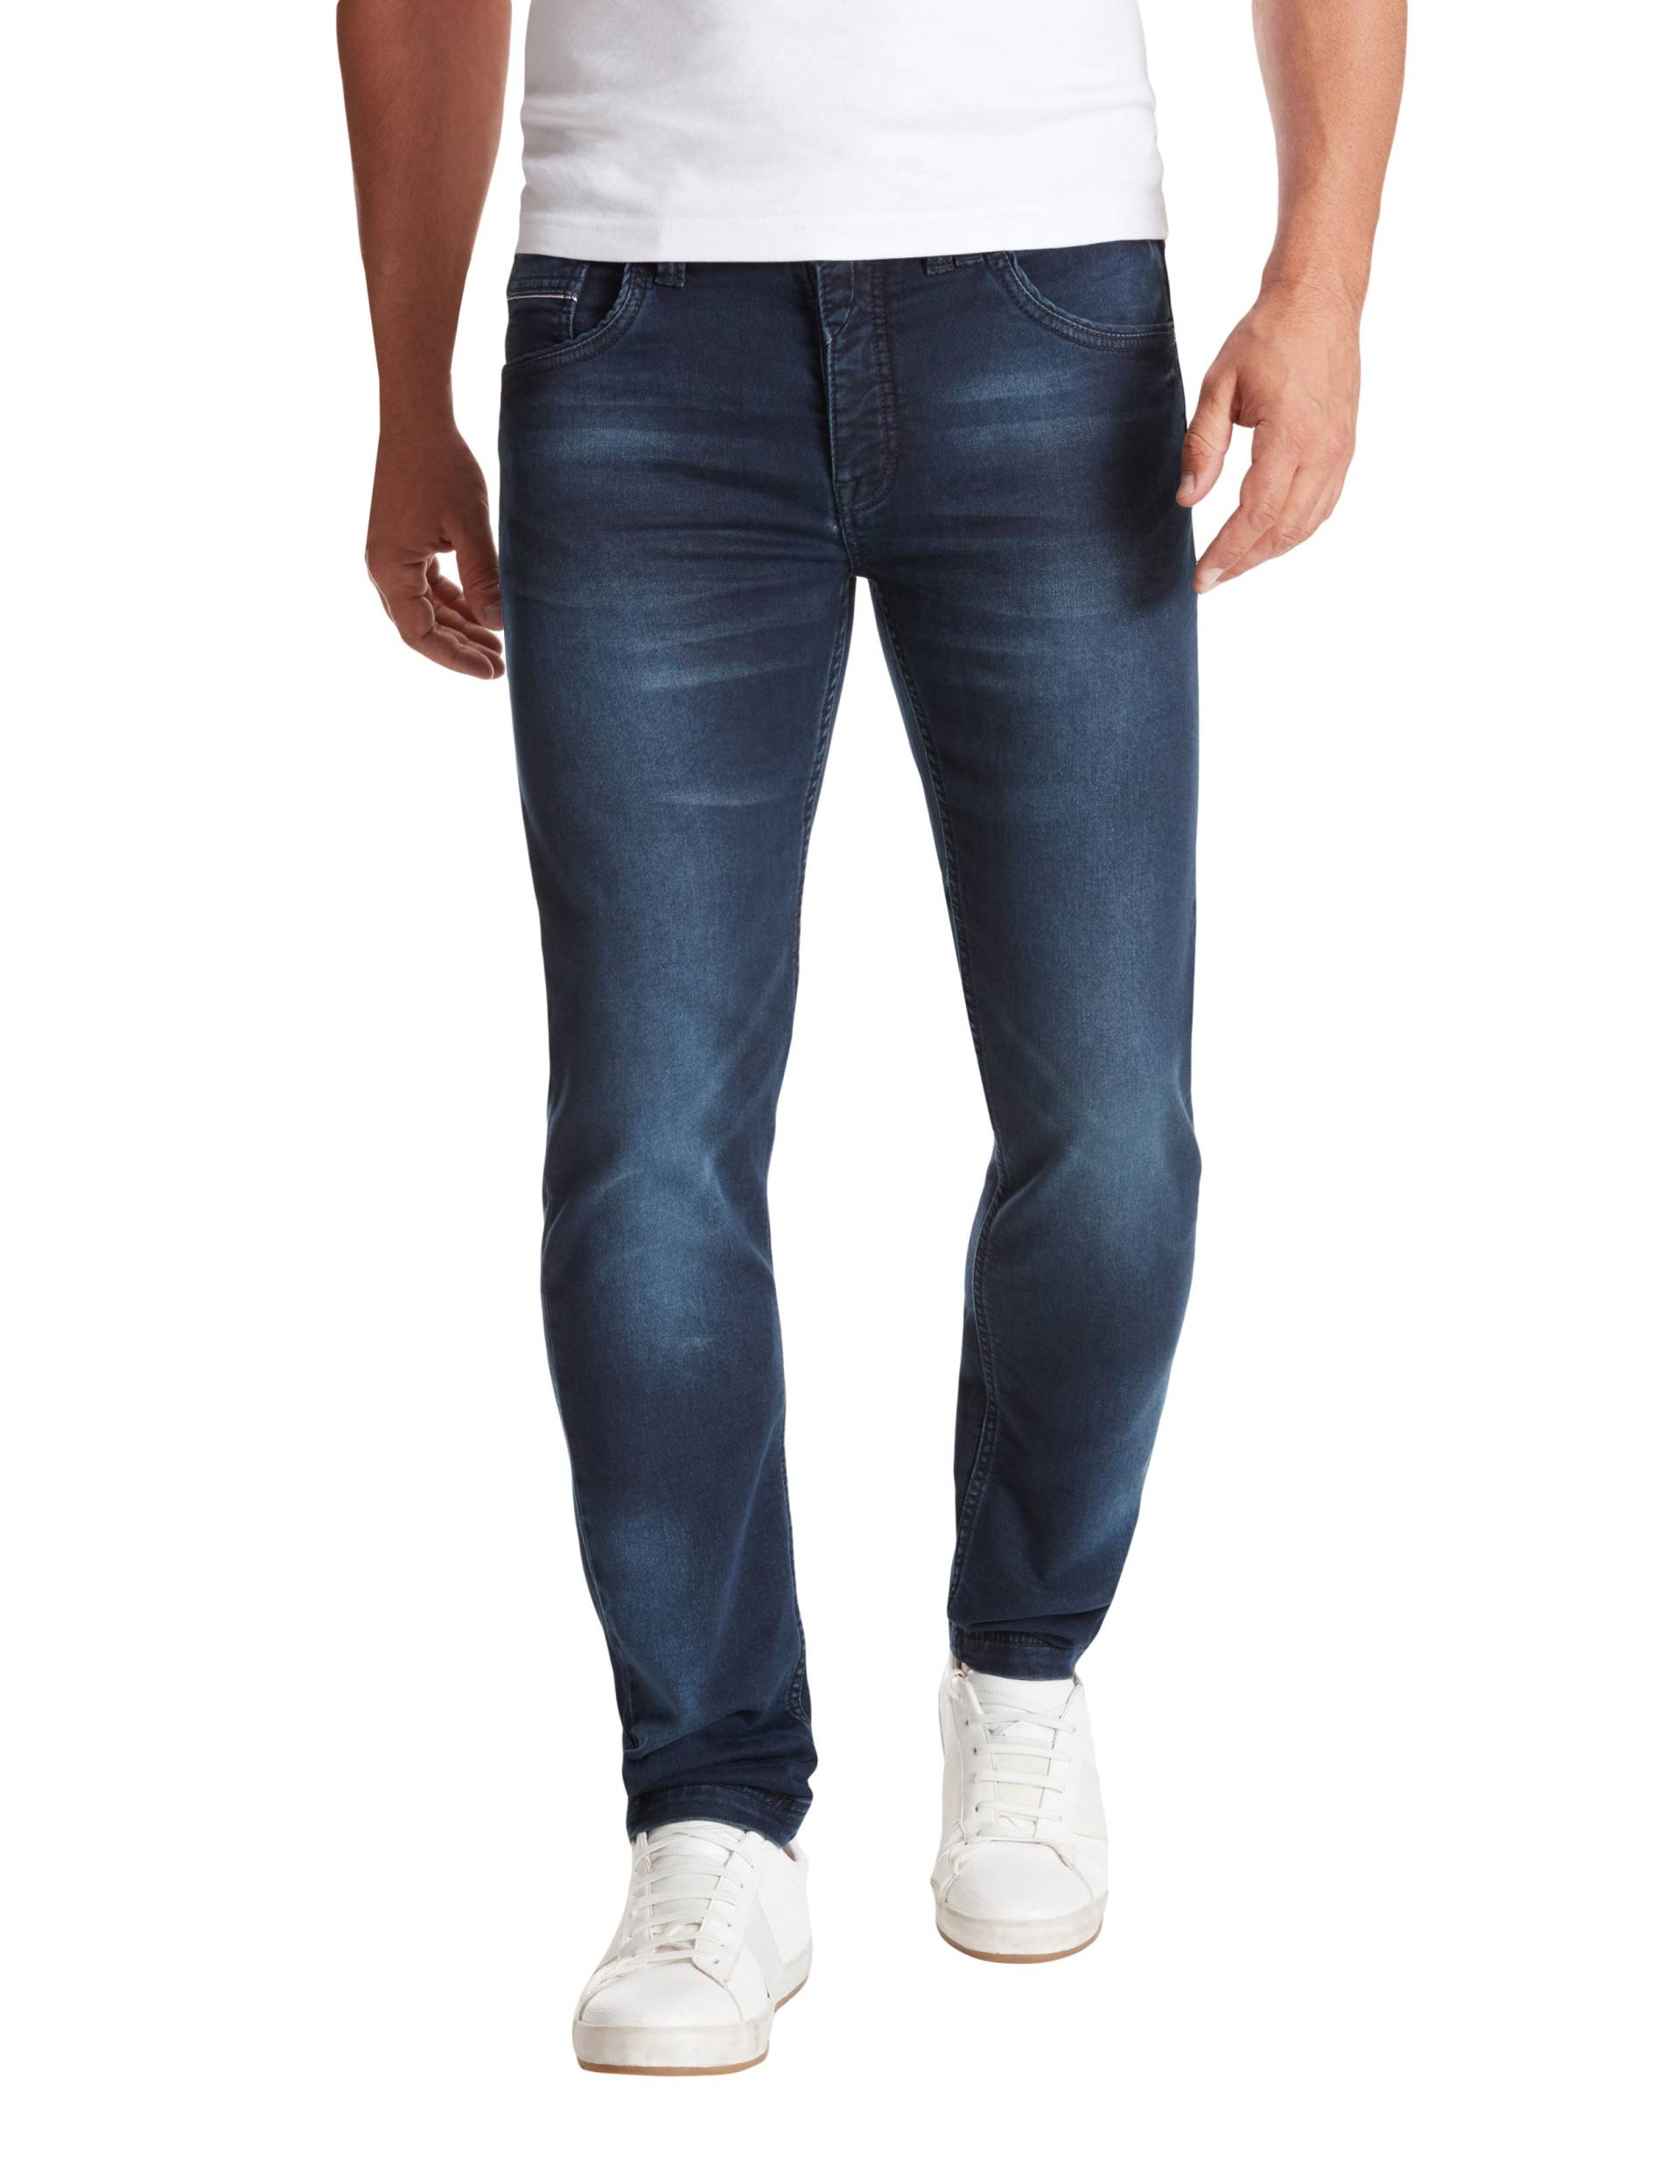 Super Slim Fit: Modell SID von Jeans Fritz